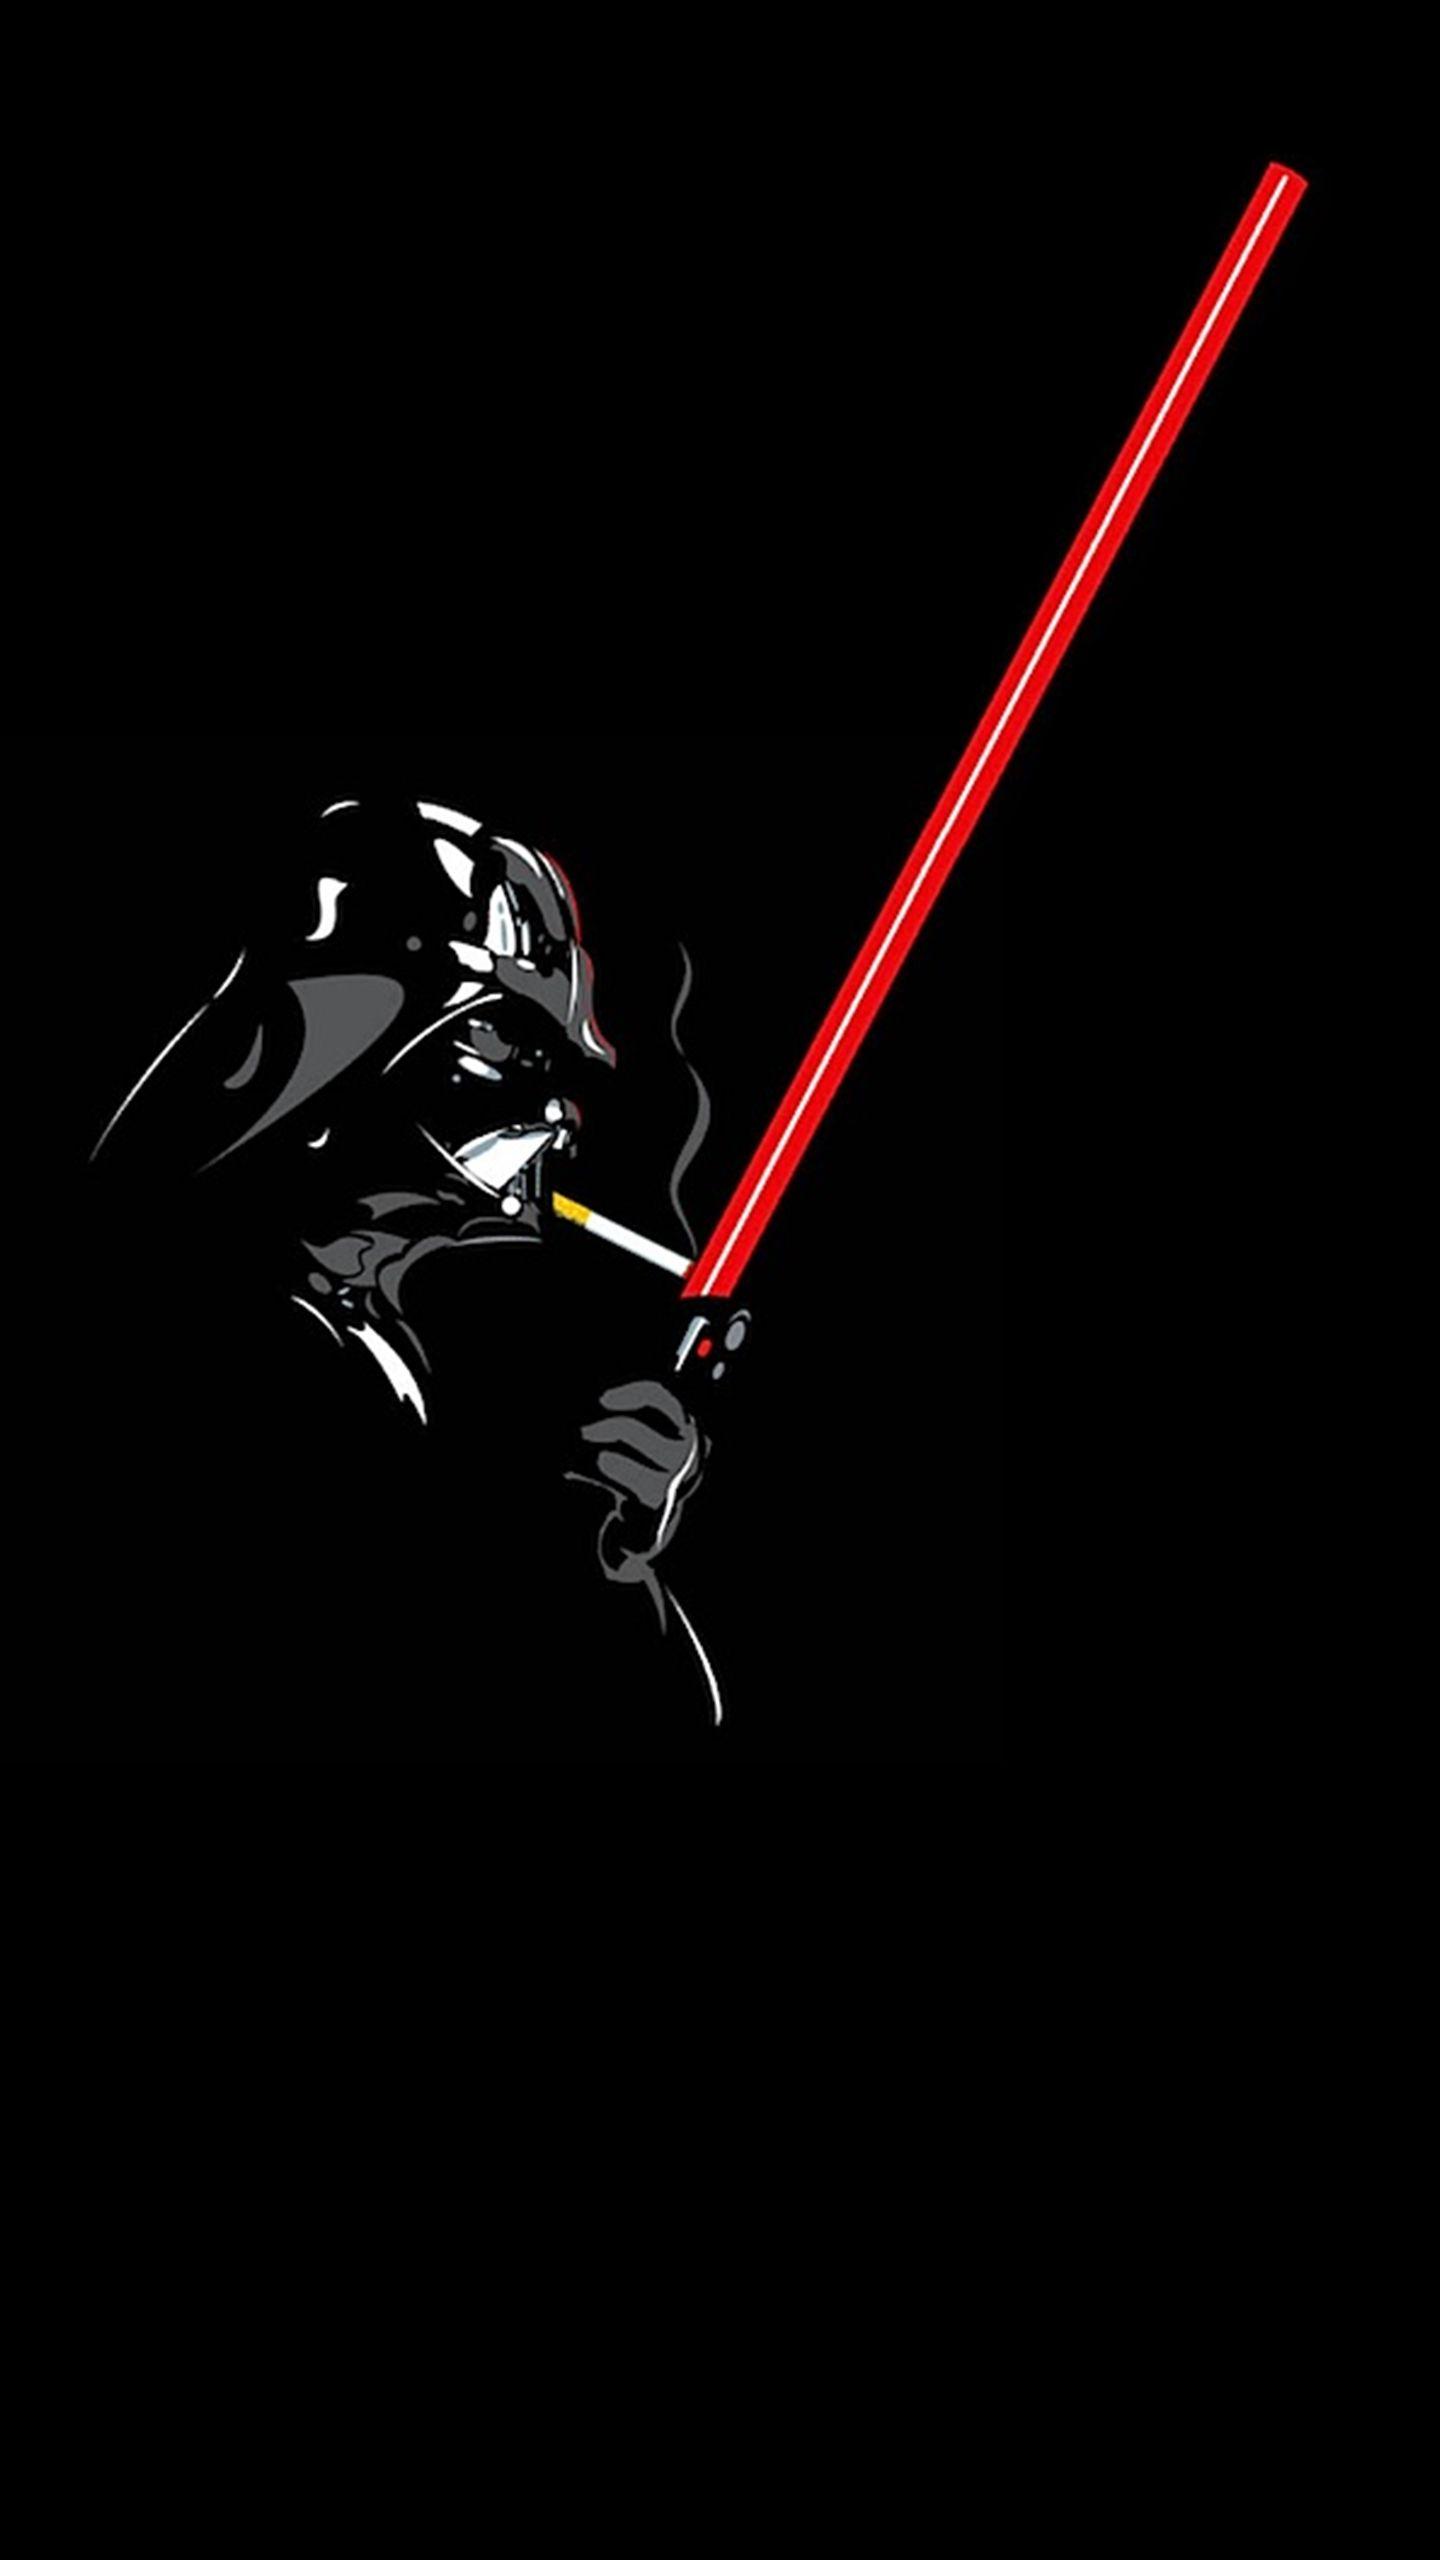 Smoke Vader. Darth vader wallpaper, Star wars wallpaper, Star wars art